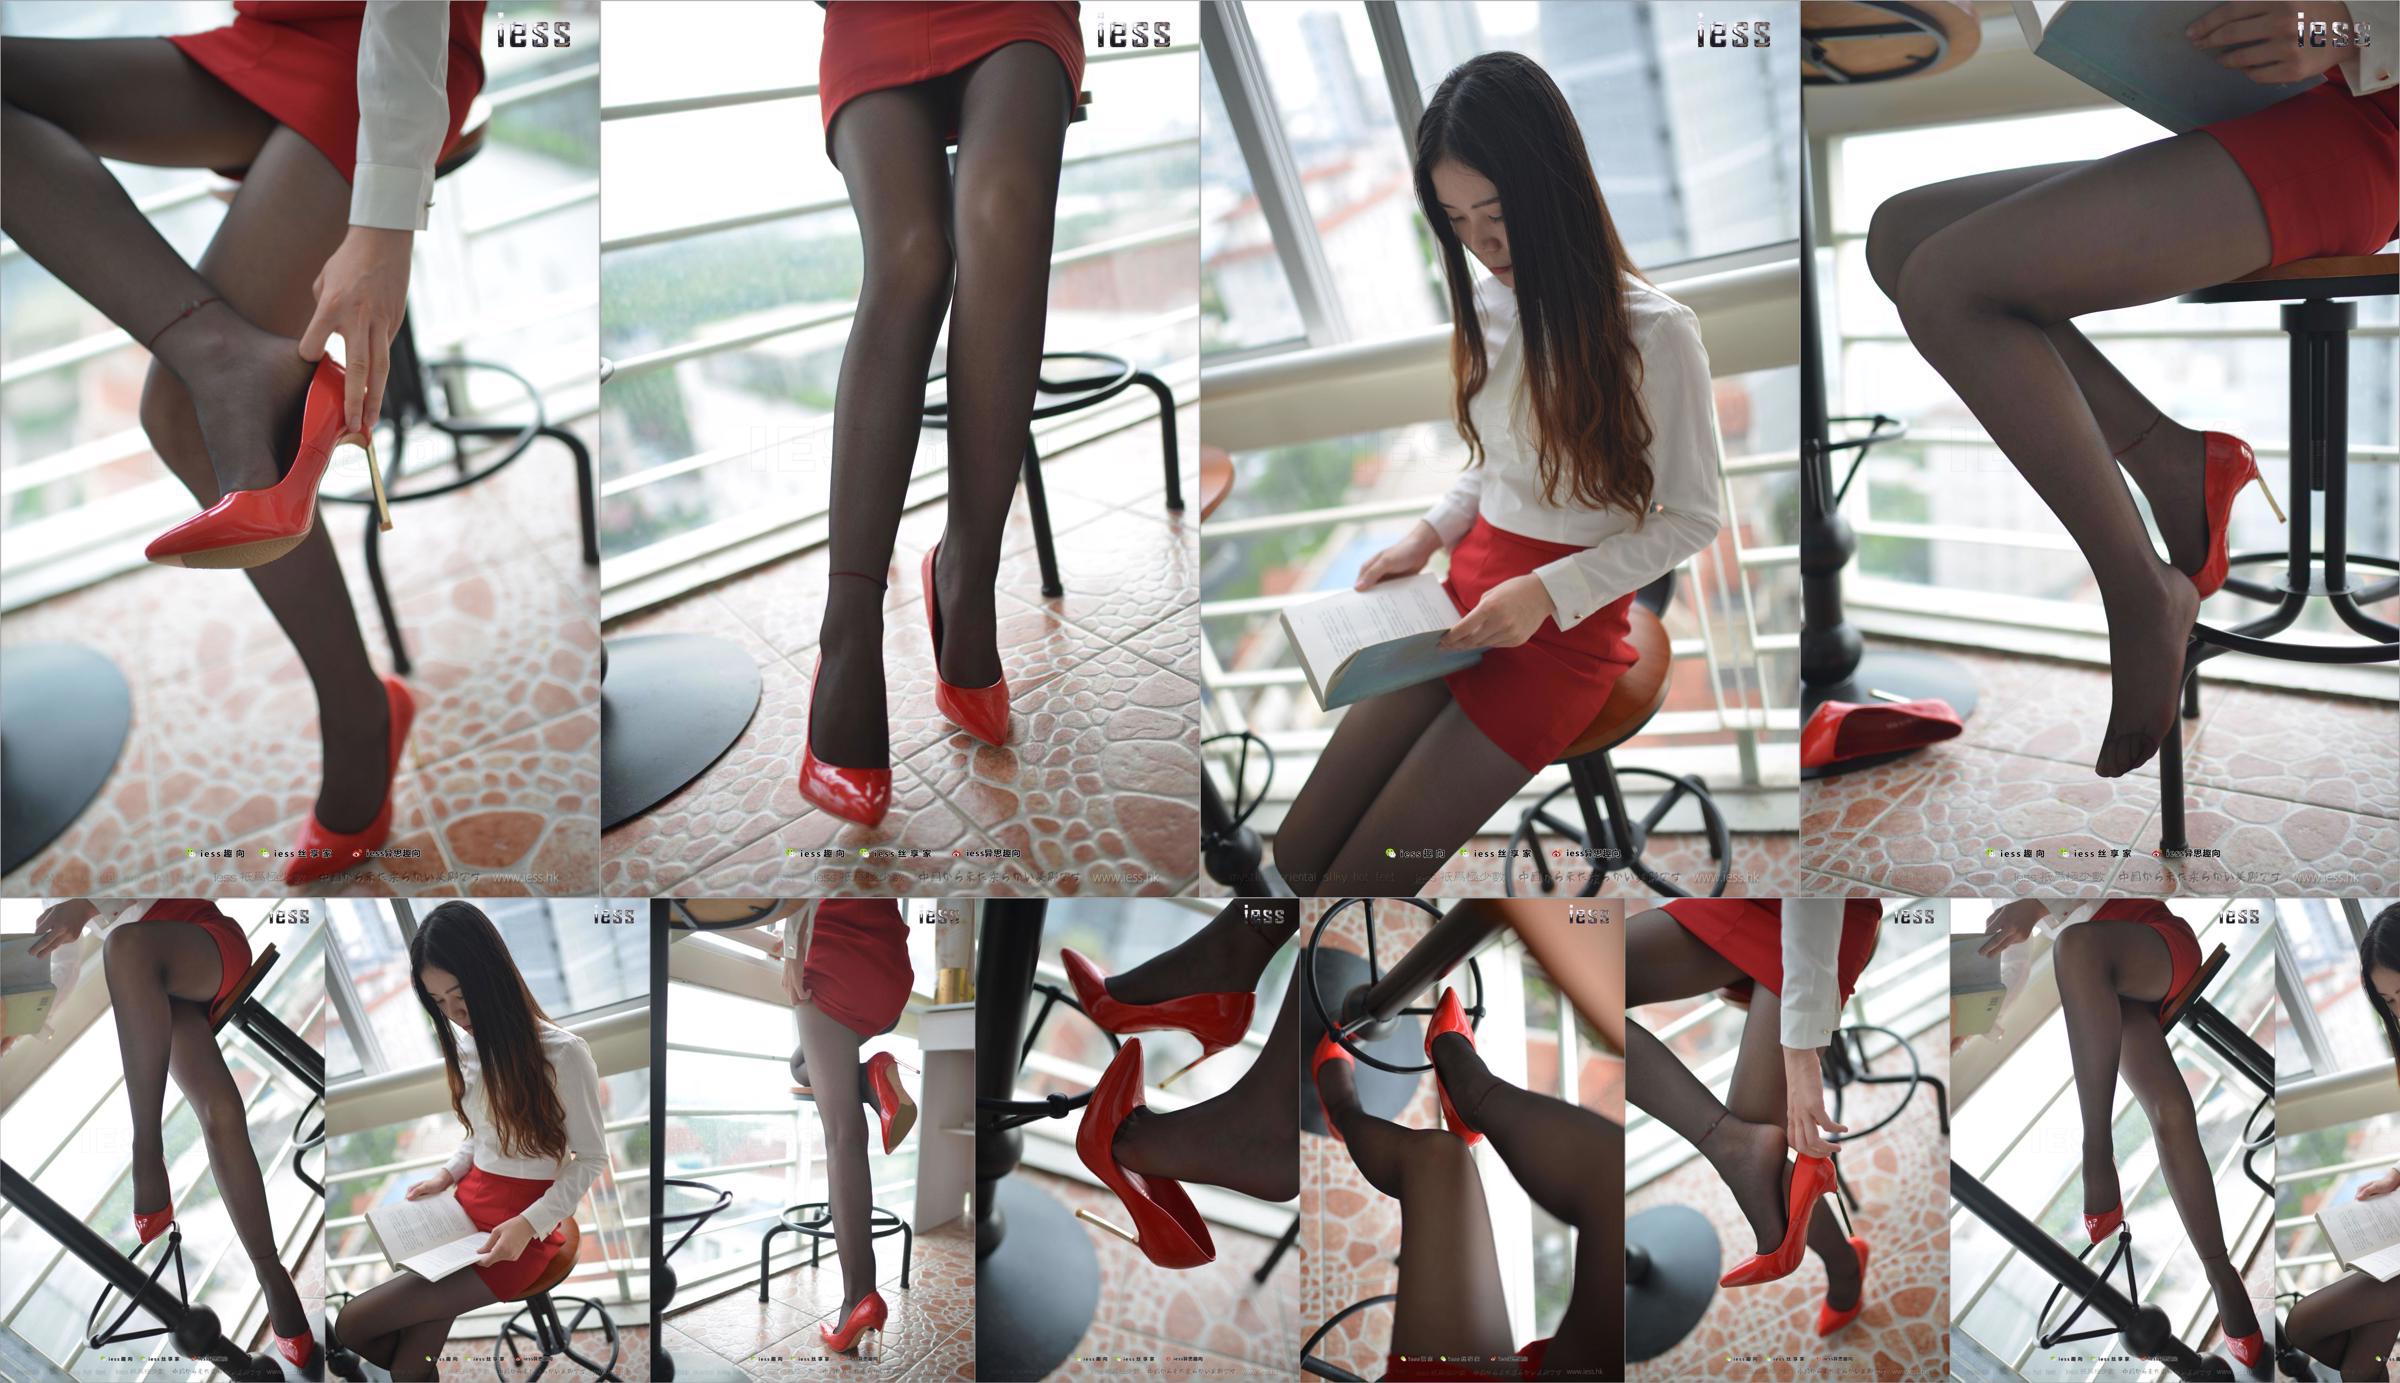 Silk Foot Bento 147 Concubine "Red High, Black Silk and Red Dress" [IESS Estranho Interessante] No.c04c90 Página 3